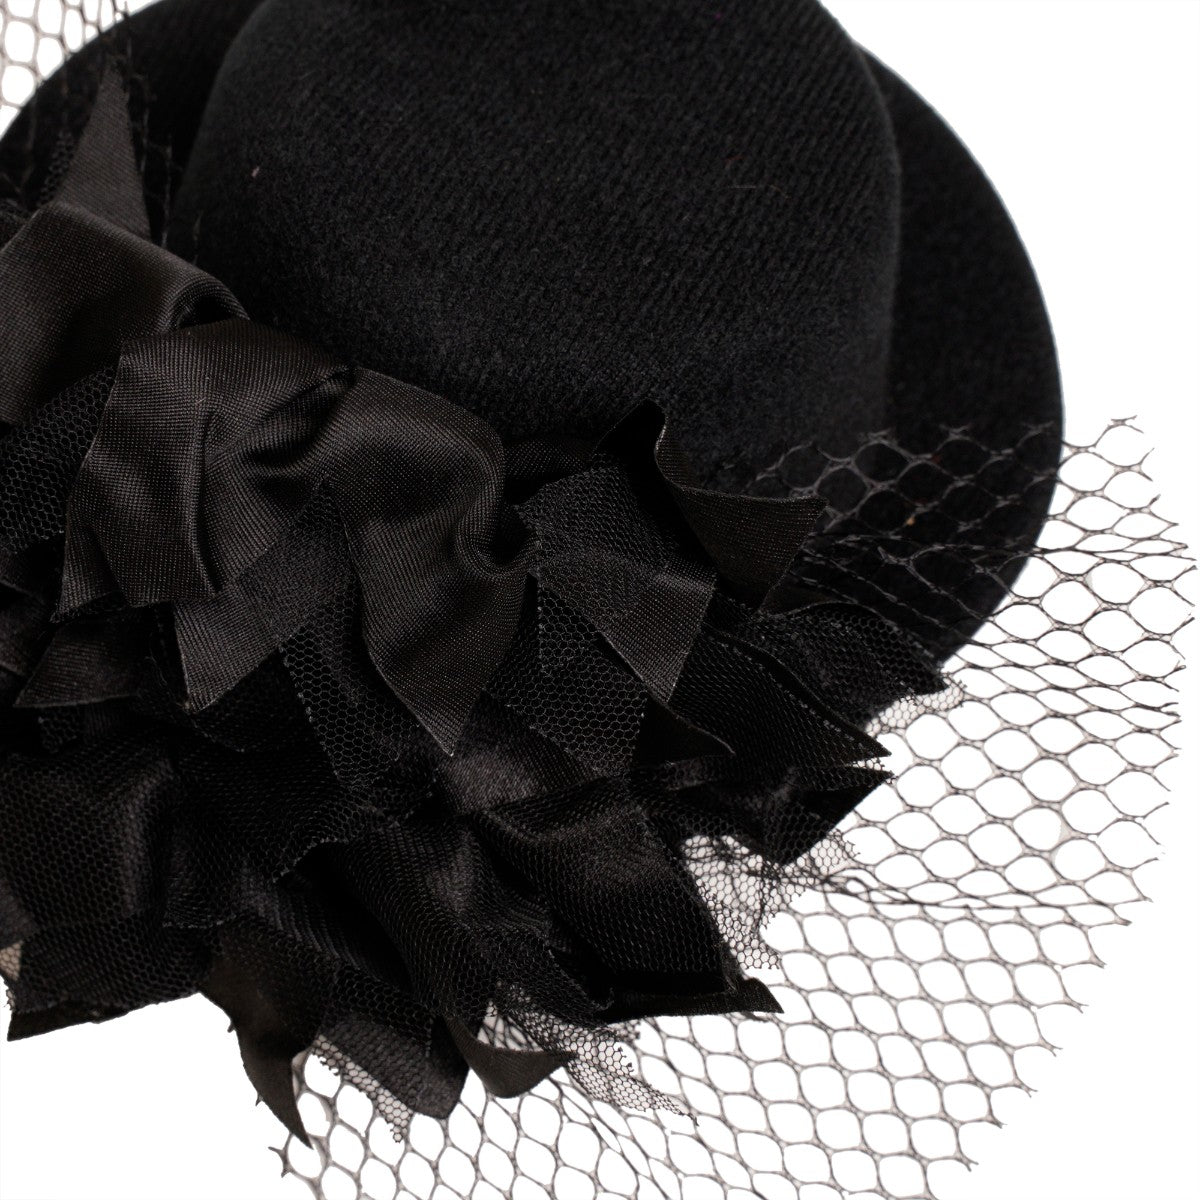 Ro Rox Retro 1940's 1950's Fascinator Net Ruffle Layer Hat